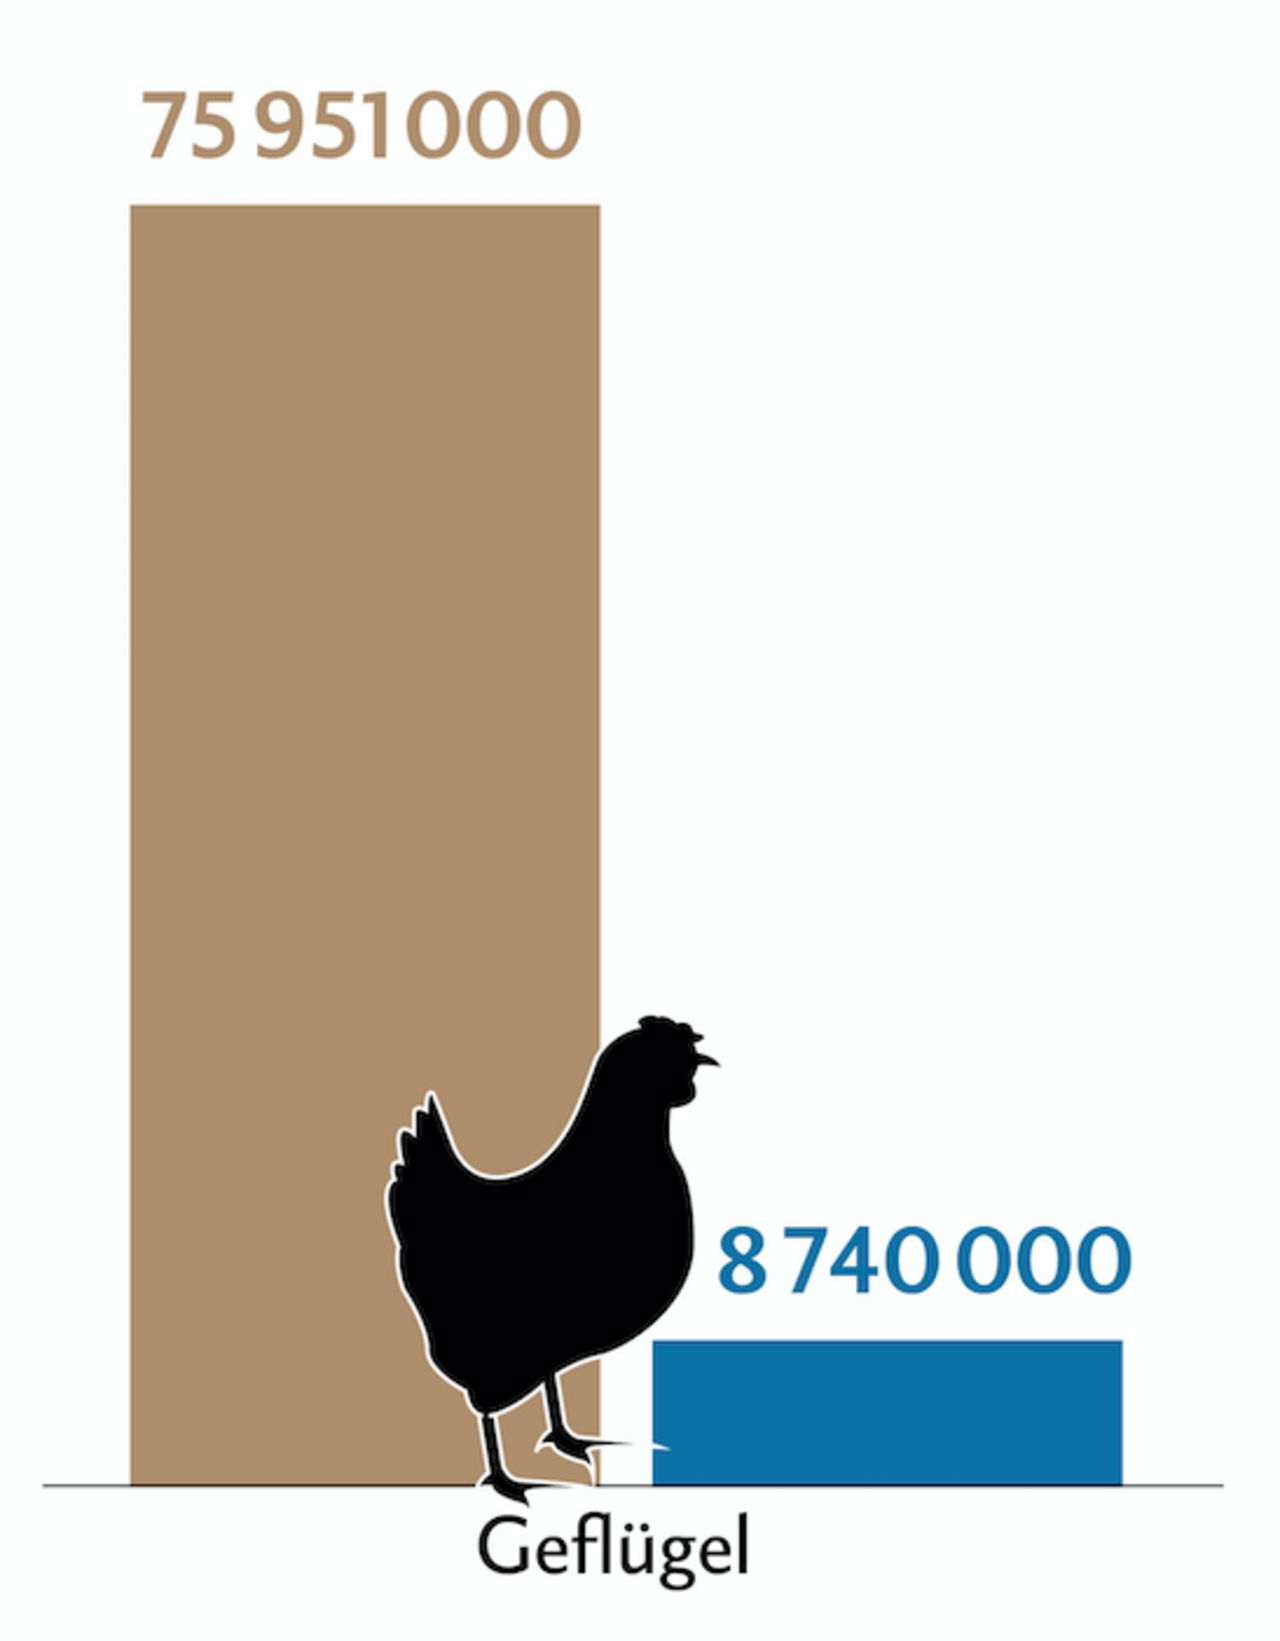 Balkendiagramm zeigt die Tierzahlen (braun) und Behandlungszahlen (blau) des Geflügels in der Schweiz.